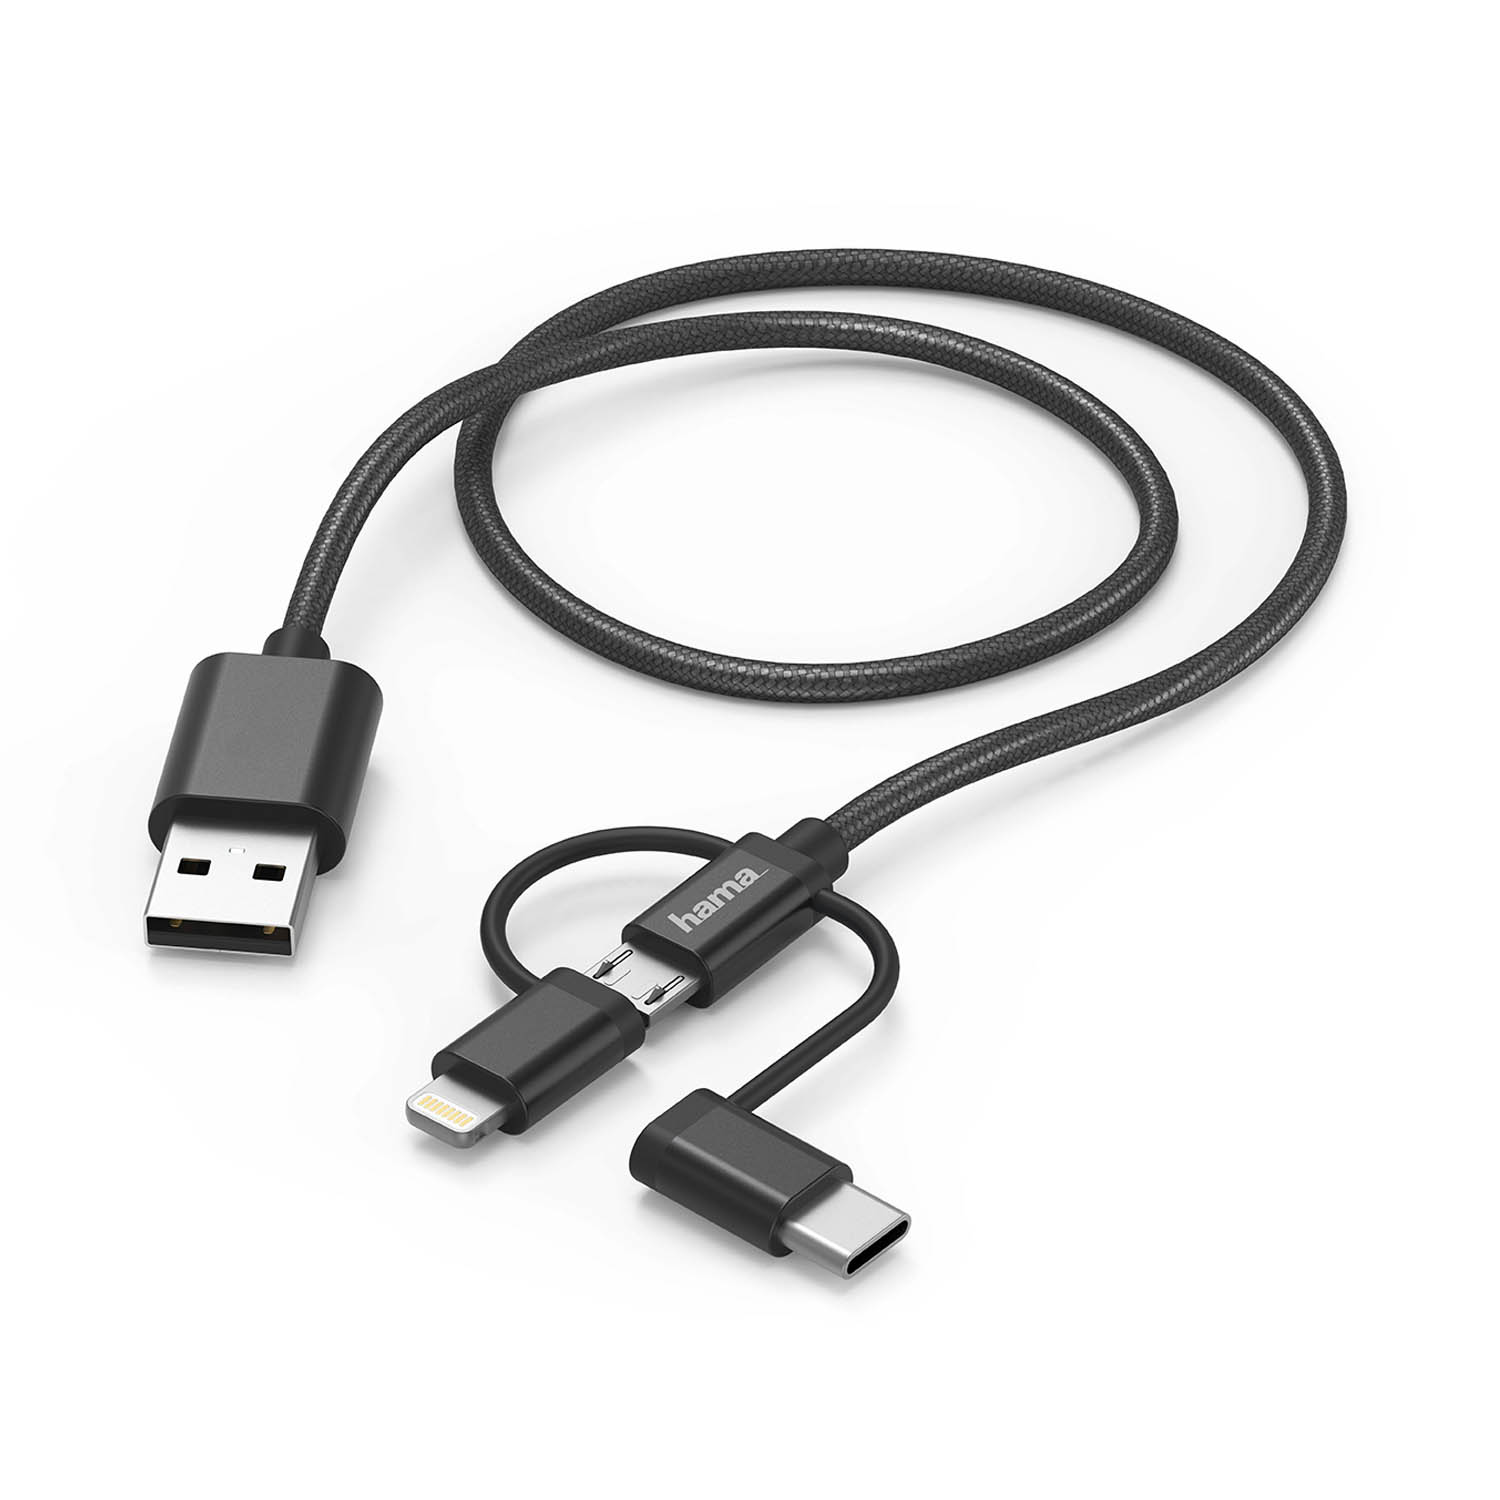 Lade-/Datenkabel 3 in 1, für Smartphones und Tablets mit USB-C, Lightning oder Micro-USB-Stecker, zusätzlicher Knickschutz